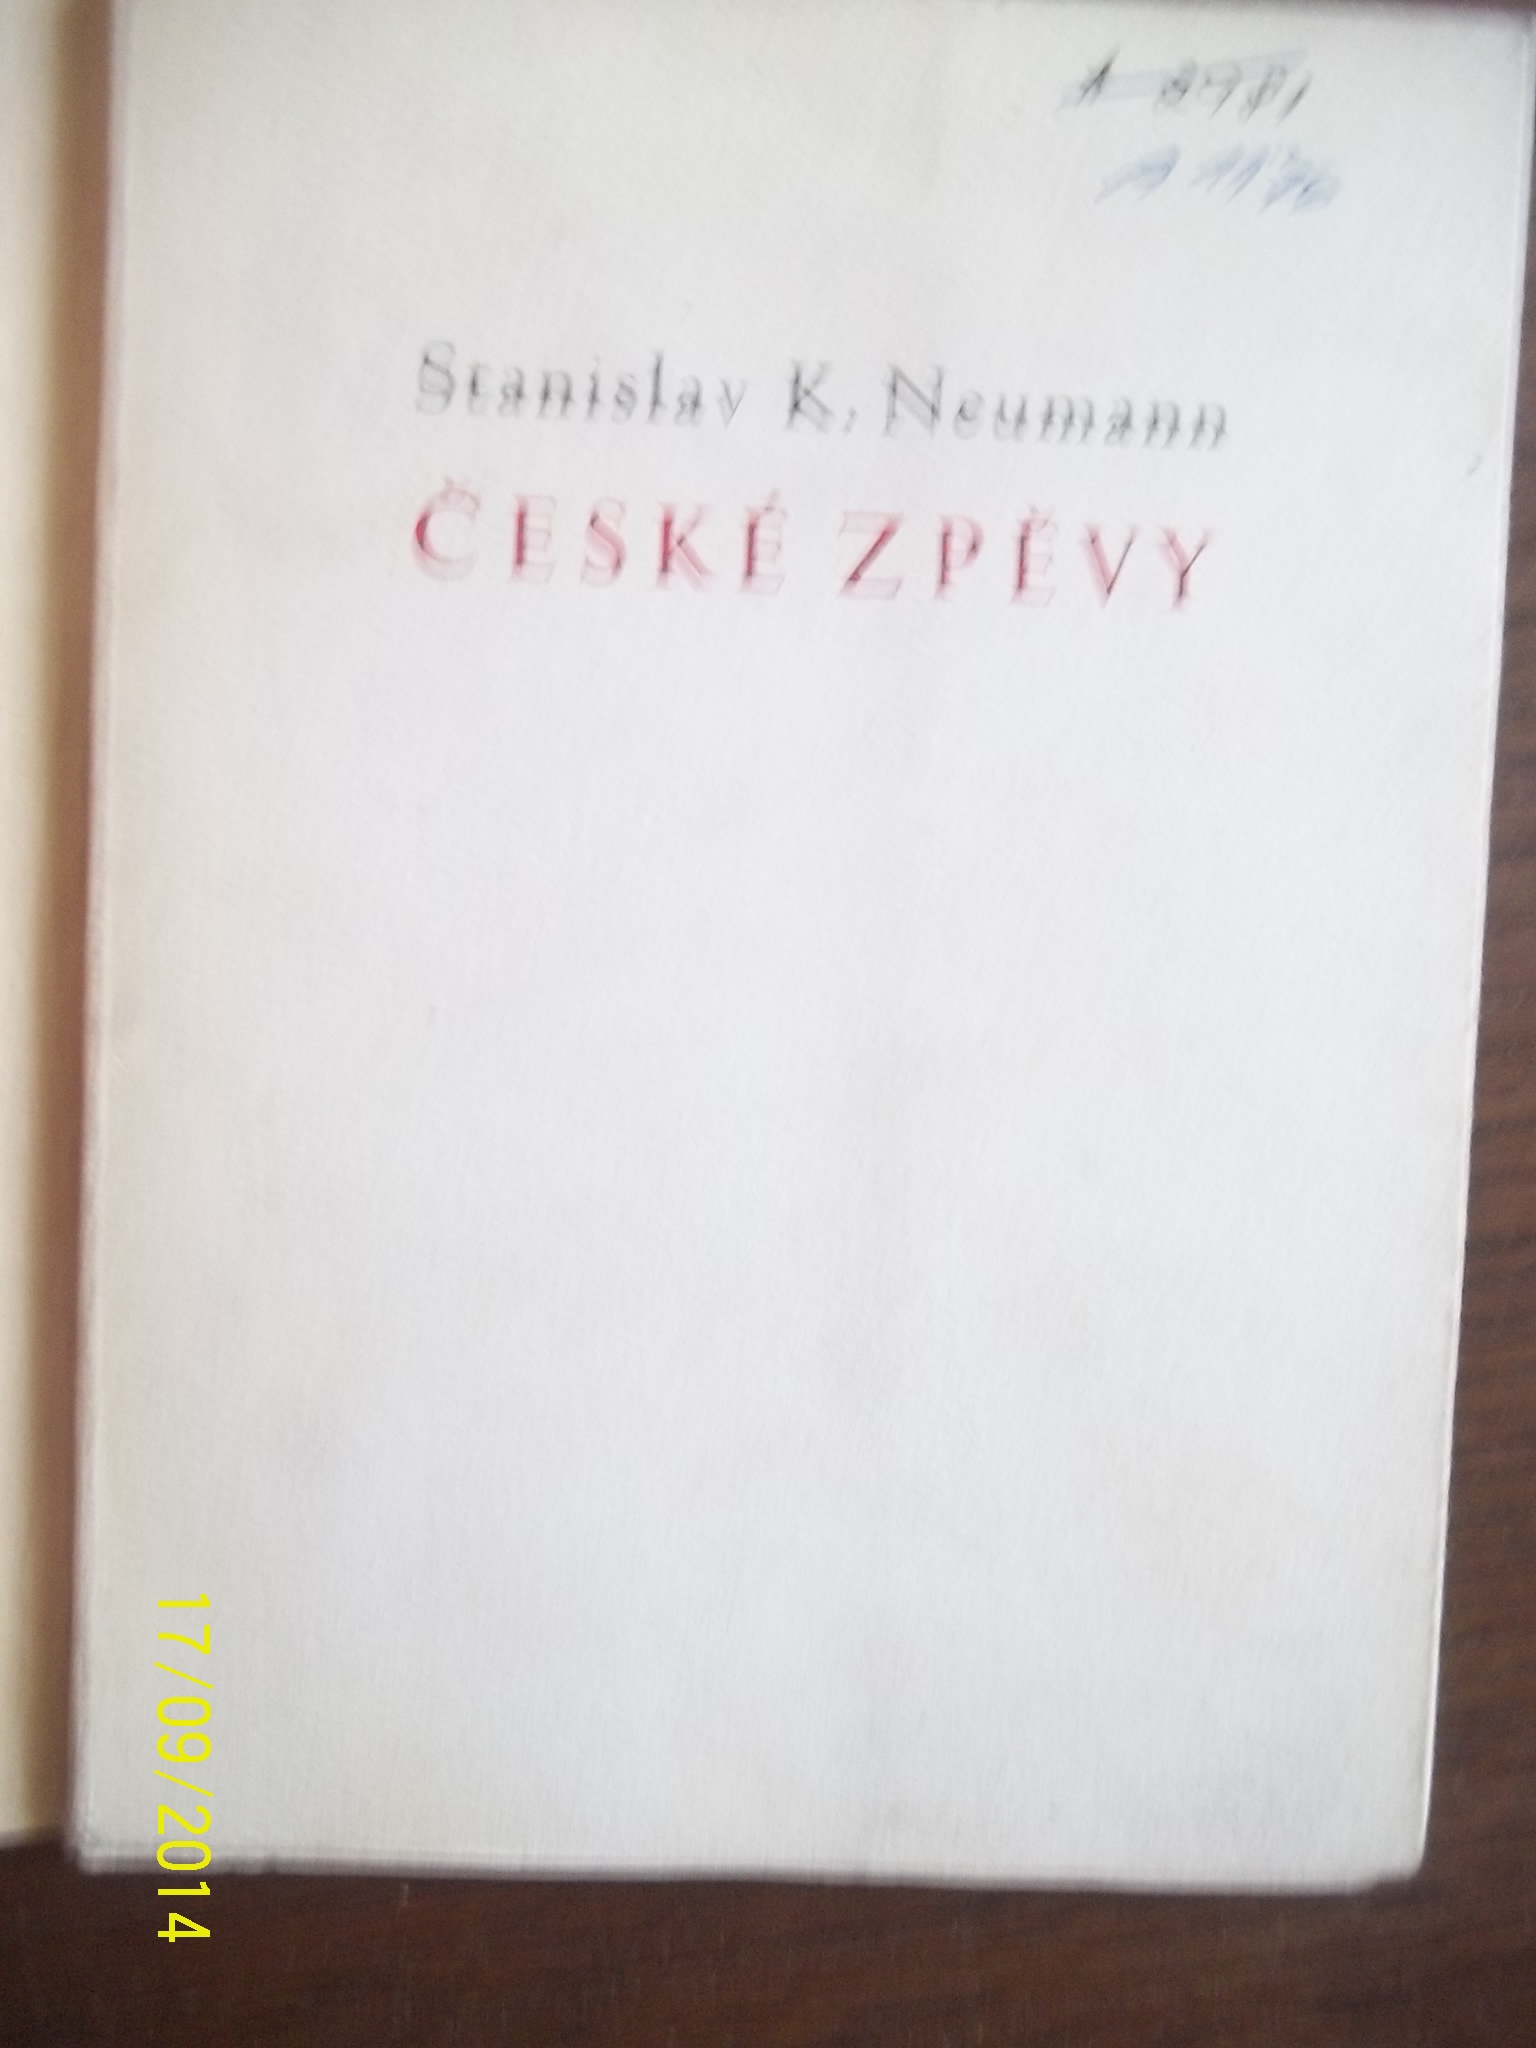 zobrazit detail knihy Neumann, Stanislav K.:  esk zpvy 